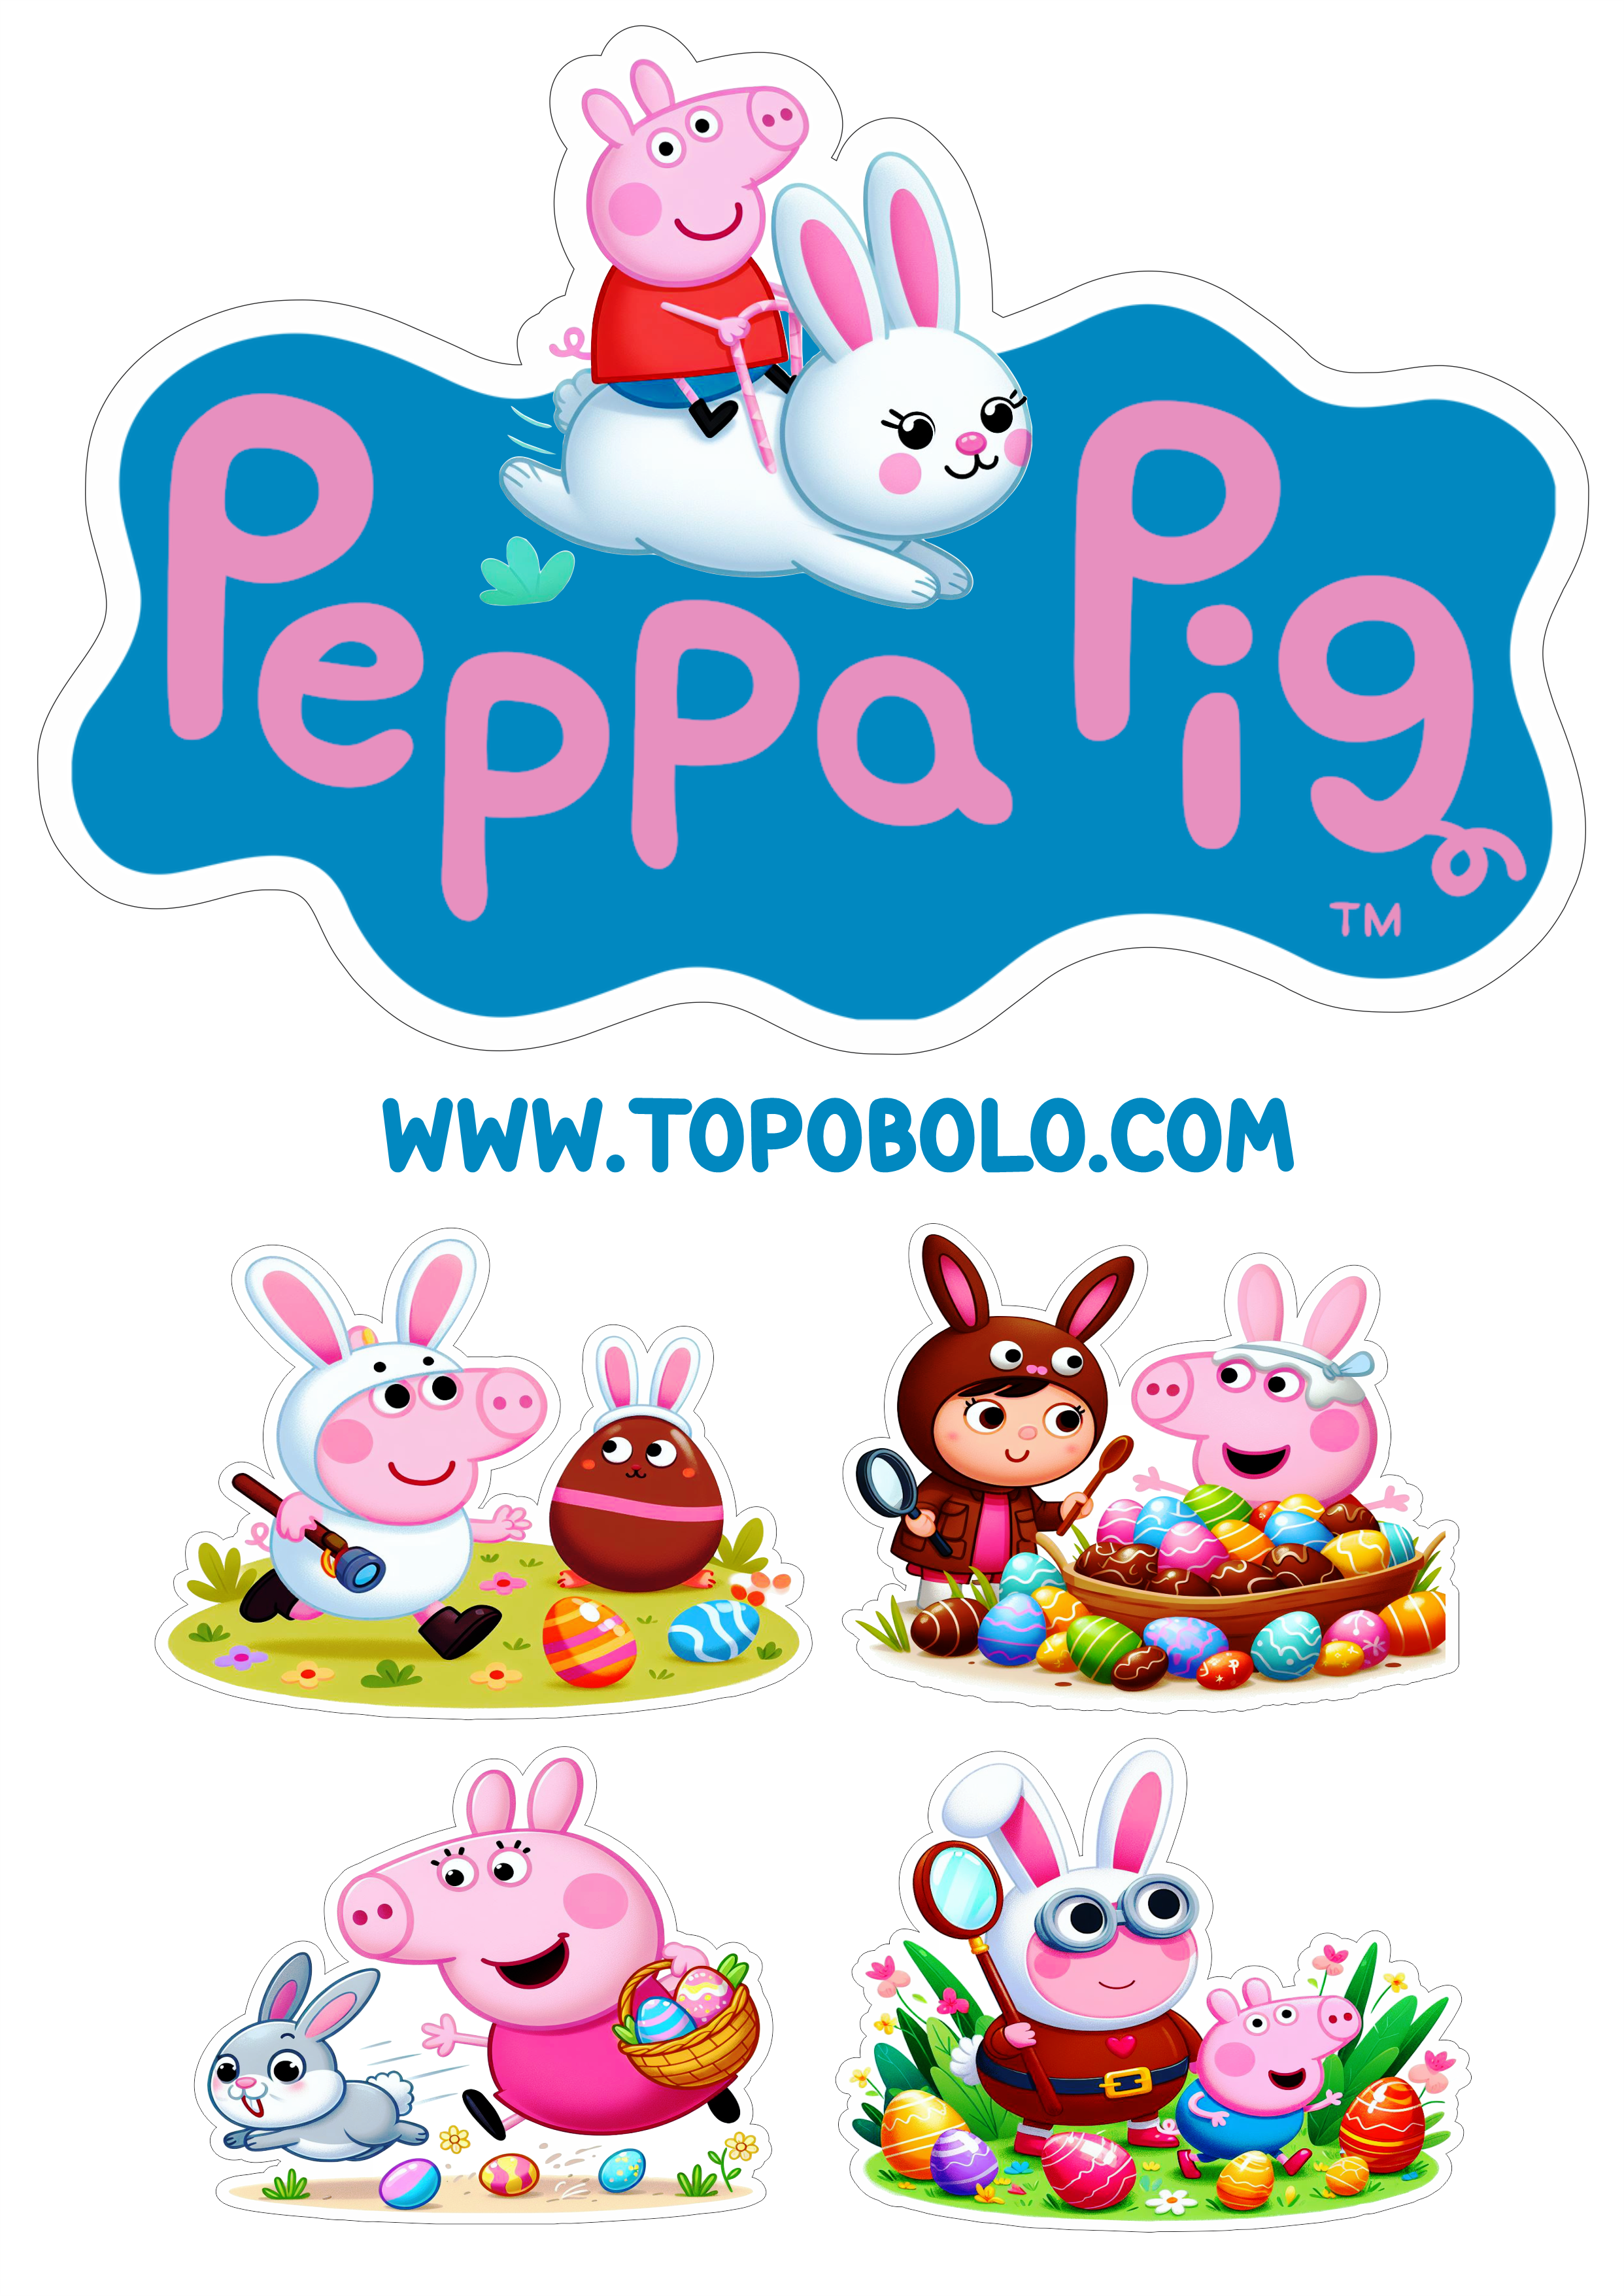 Topo de bolo Peppa Pig especial de páscoa aniversário png